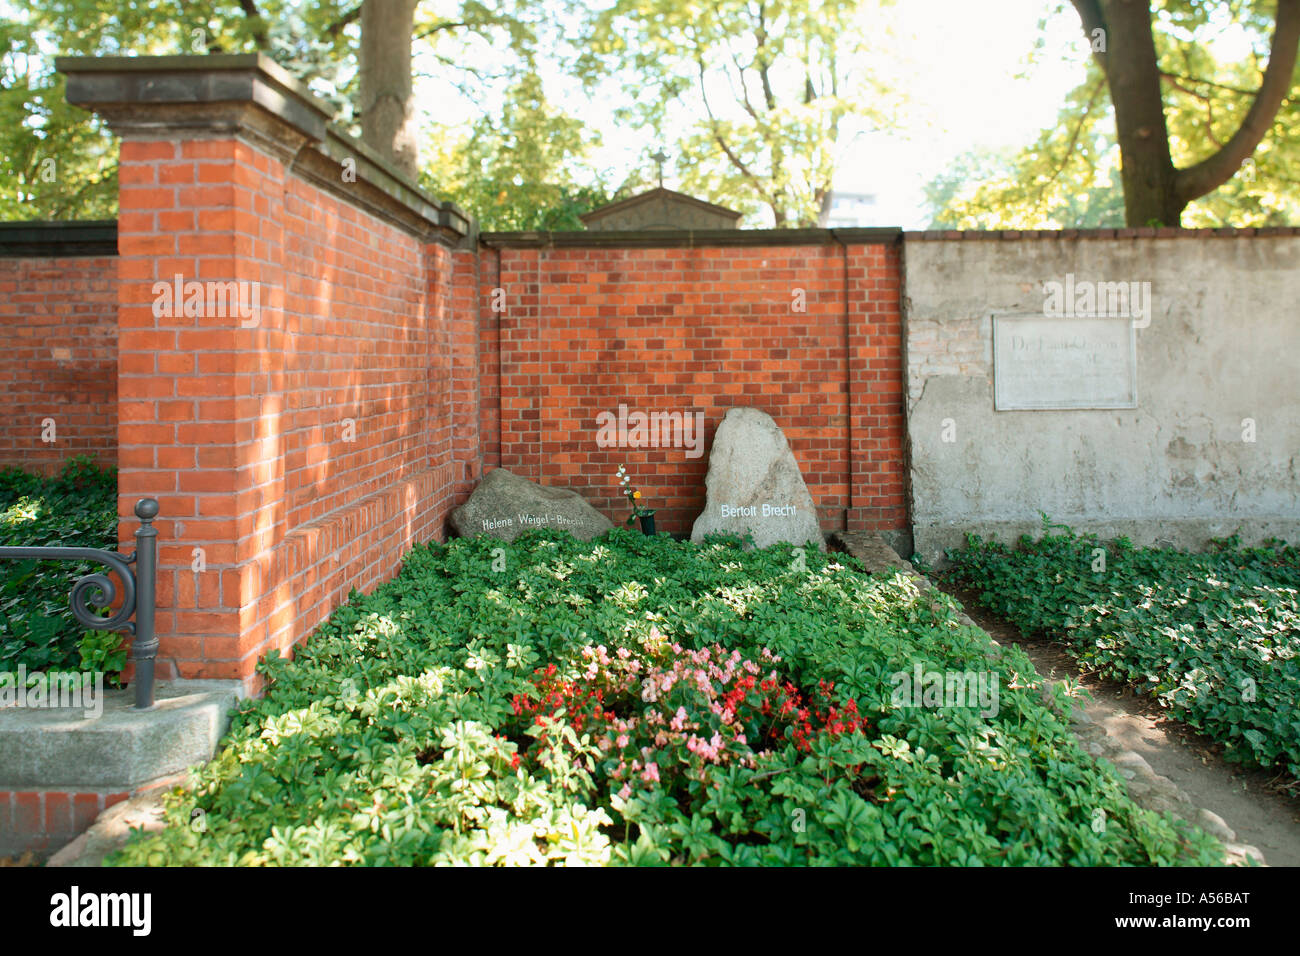 Grave of Bertolt Brecht, Berlin, Germany Stock Photo